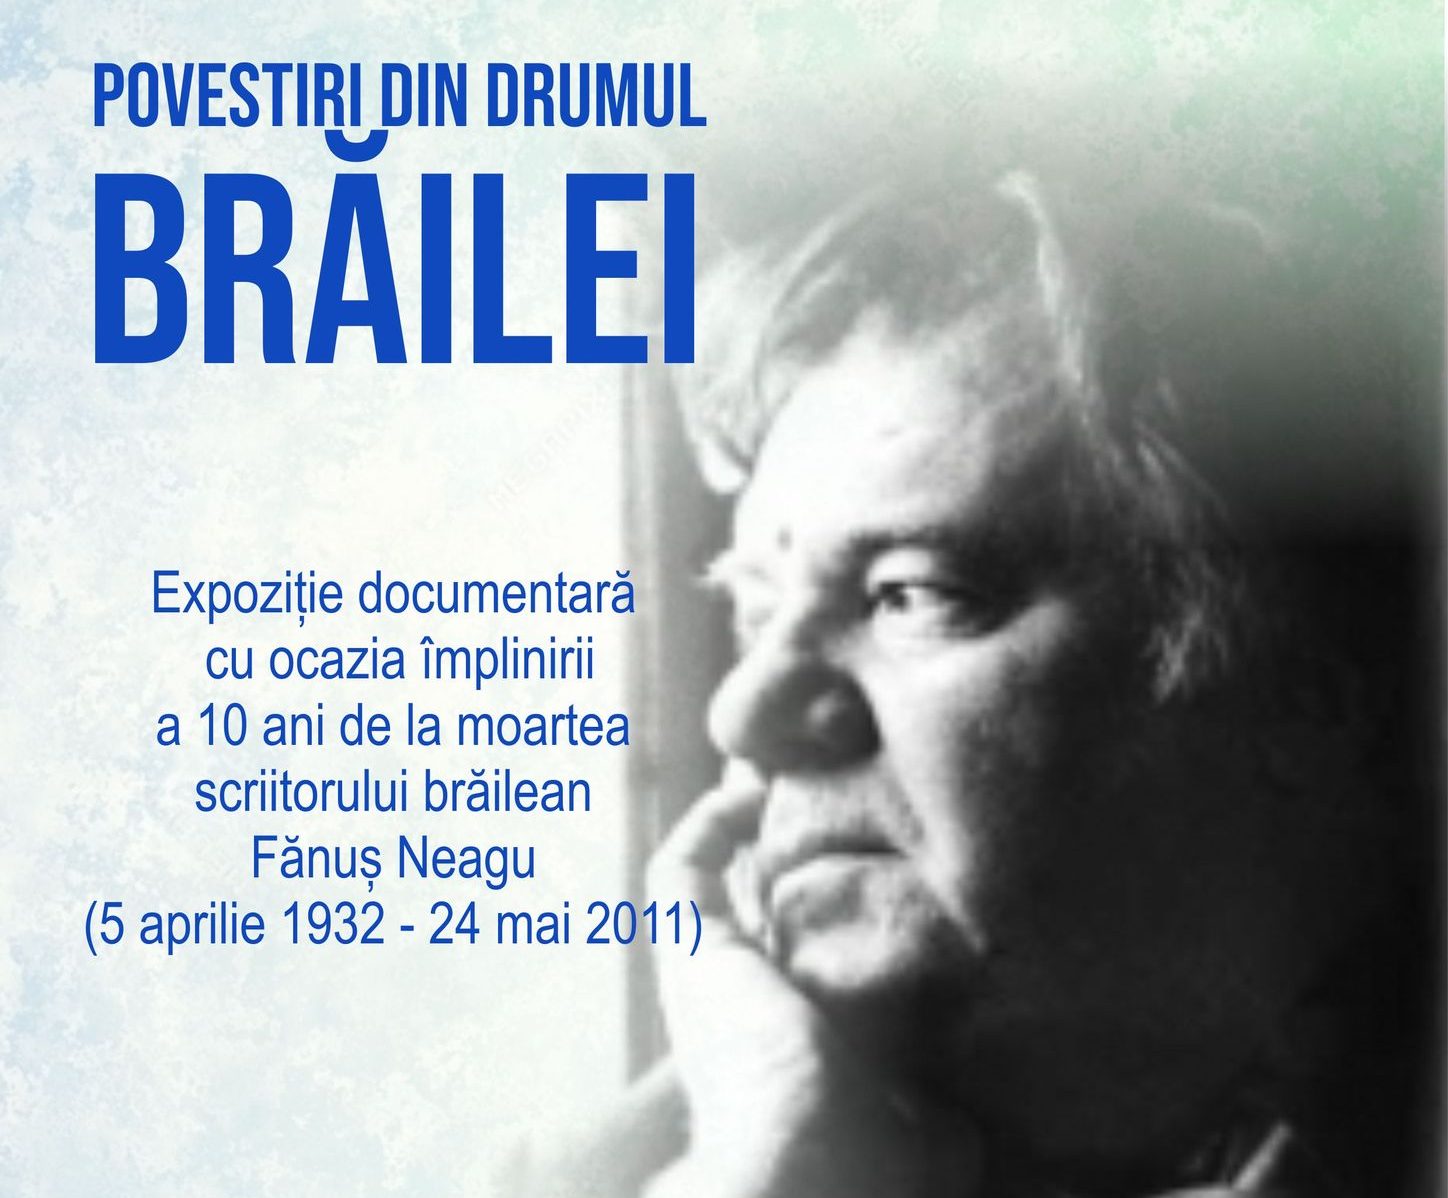 Povestiri din drumul Brăilei – expoziție documentară cu ocazia împlinirii a 10 ani de la moartea scriitorului brăilean Fănuş Neagu (n. 5 apr. 1932 – d. 24 mai 2011)